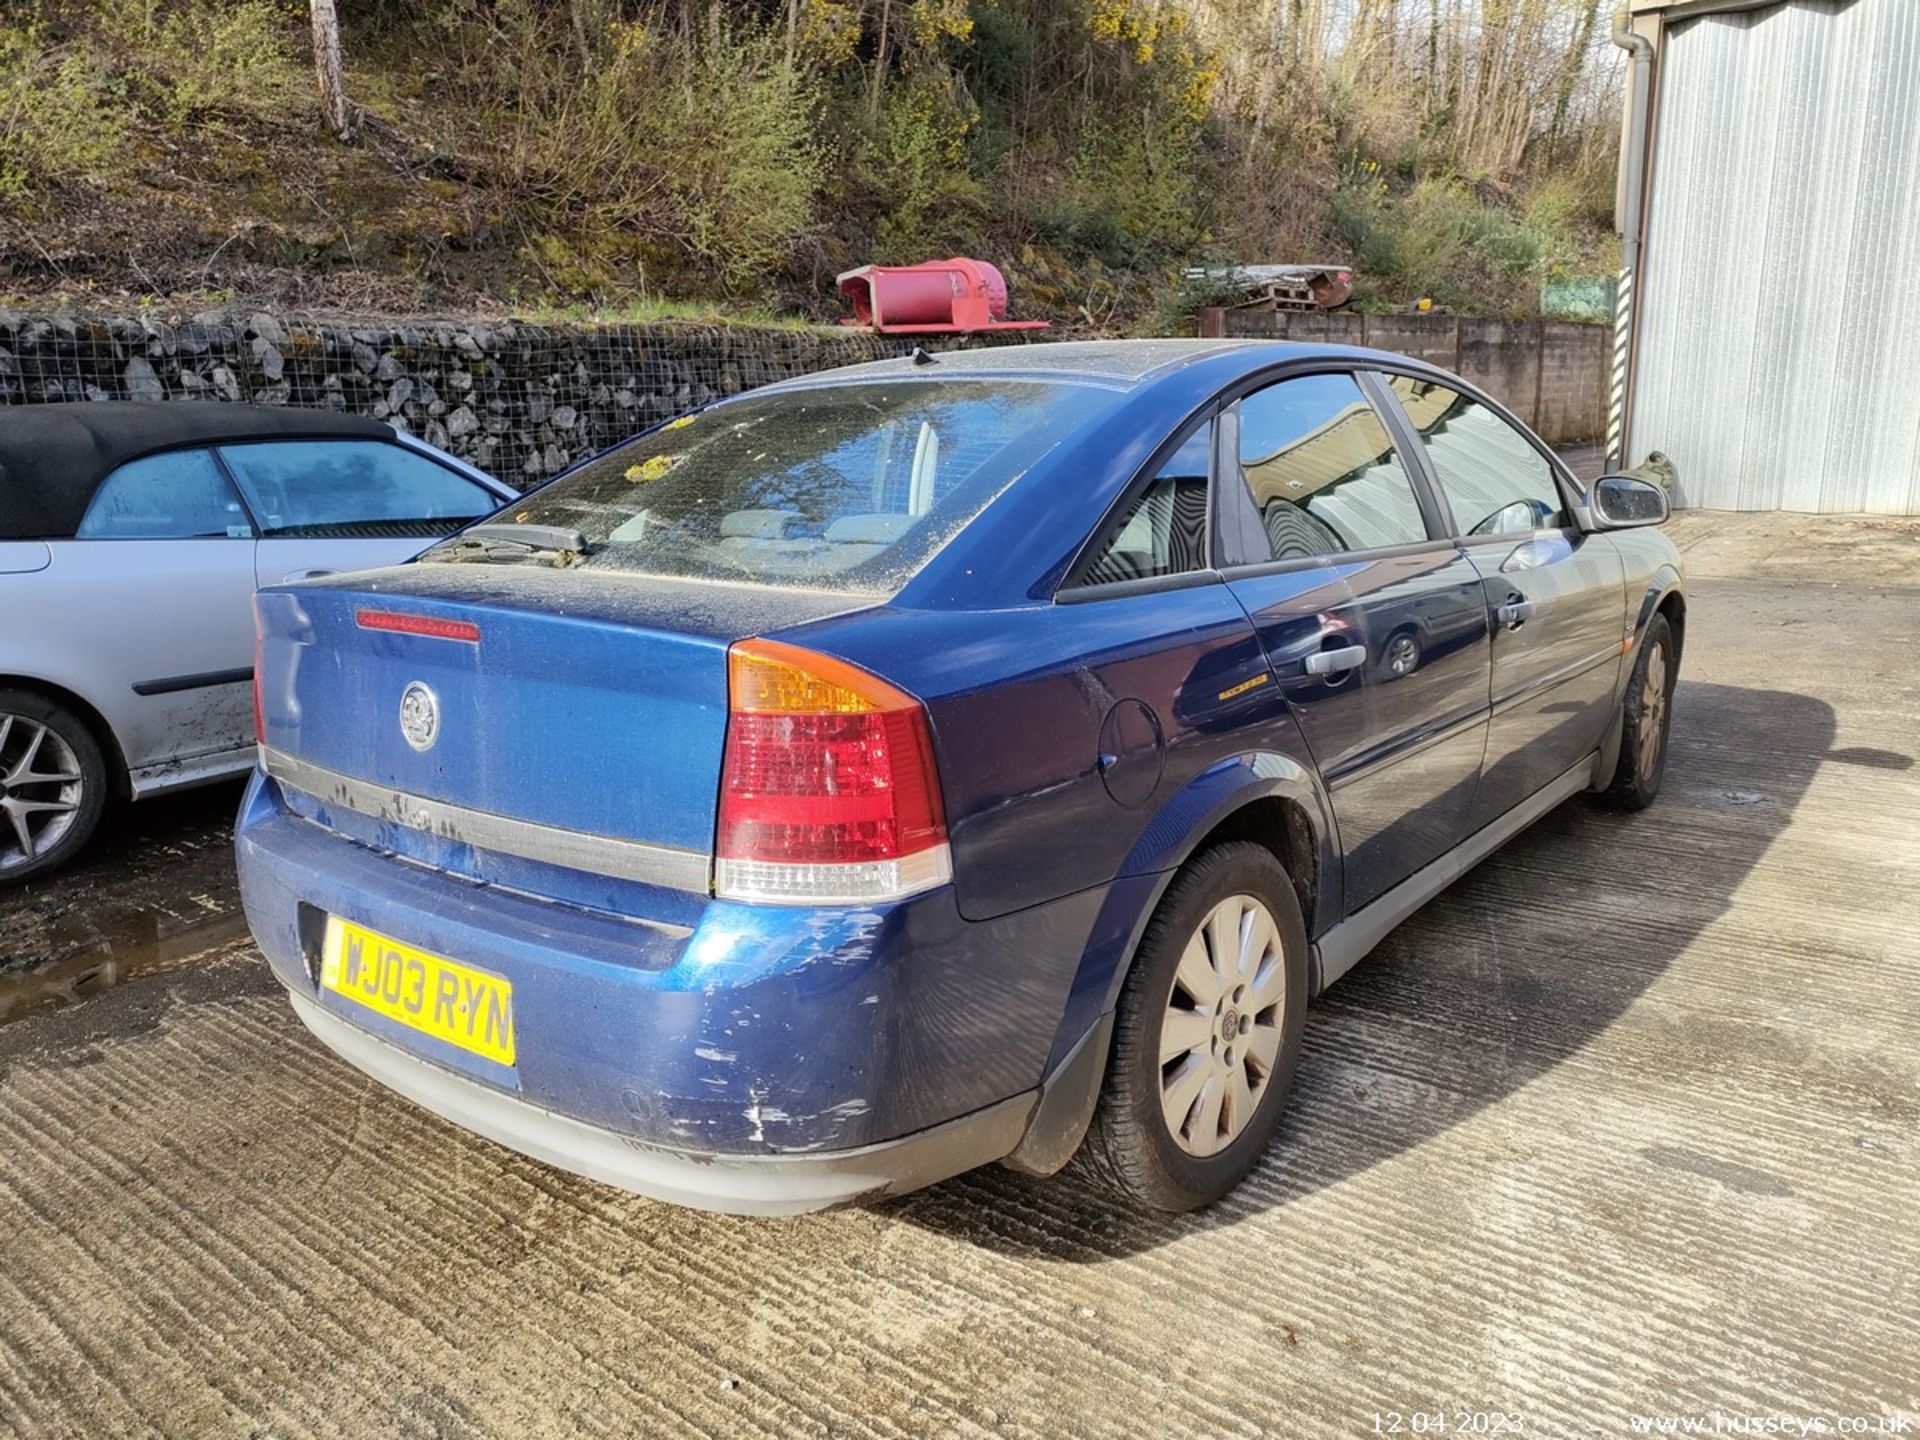 03/03 VAUXHALL VECTRA SXI 16V - 1796cc 5dr Hatchback (Blue) - Image 22 of 40